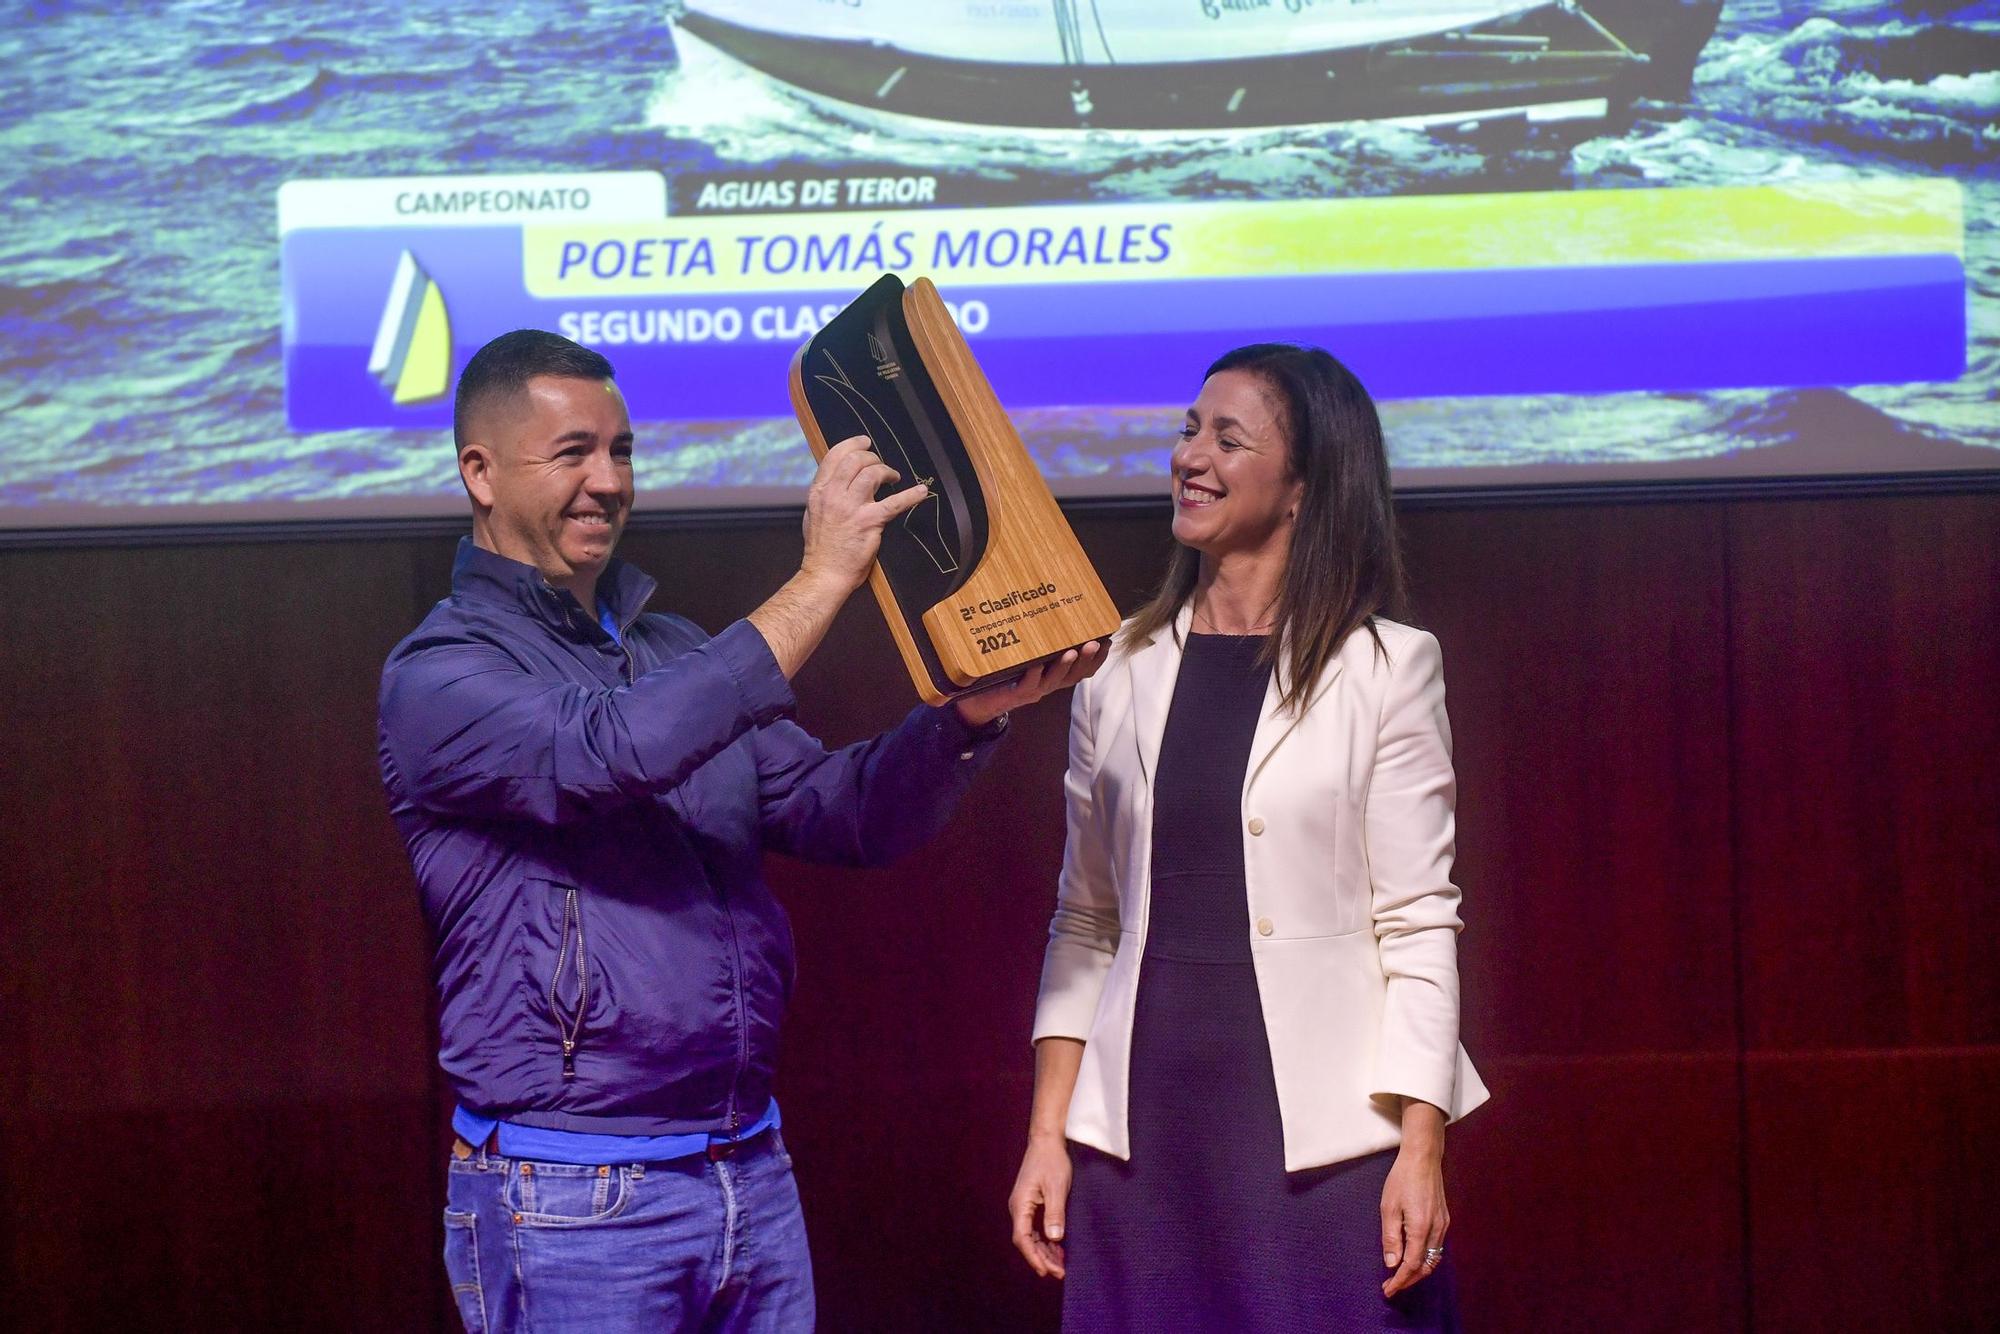 Vela latina: gala de entrega de trofeos y reconocimientos